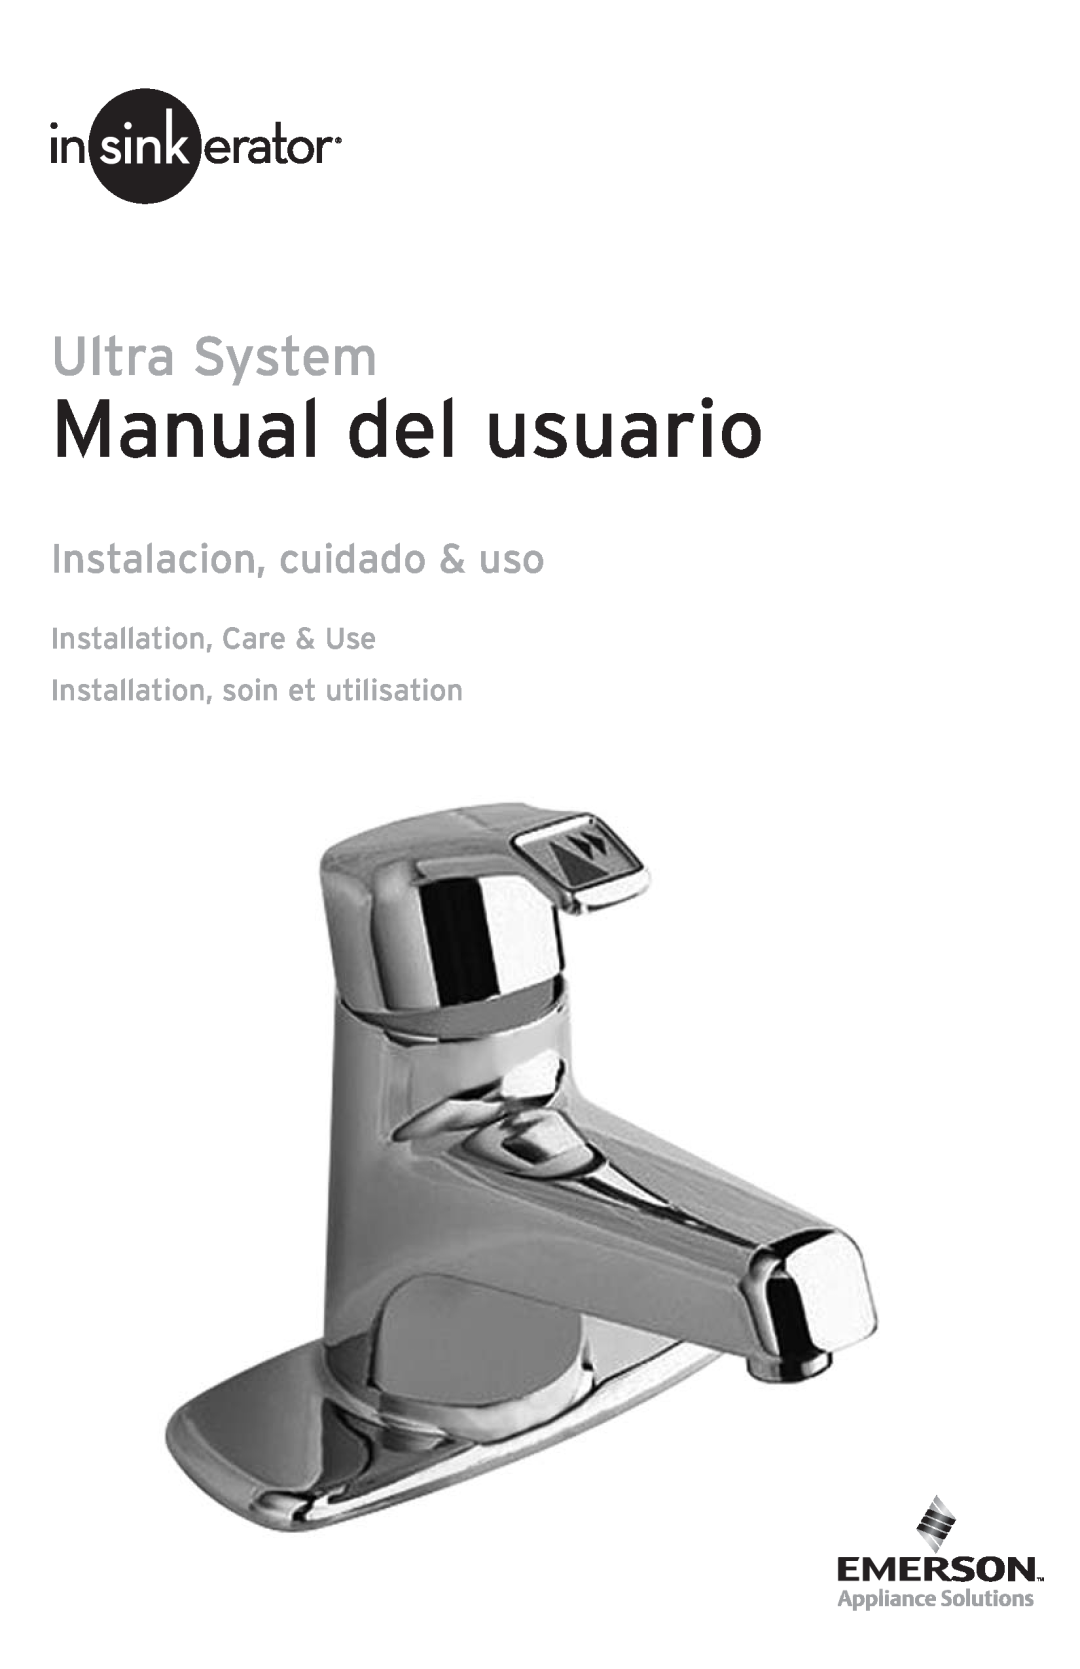 Emerson UWL owner manual Manual del usuario, Instalacion, cuidado & uso, Installation, Care & Use, Ultra System 